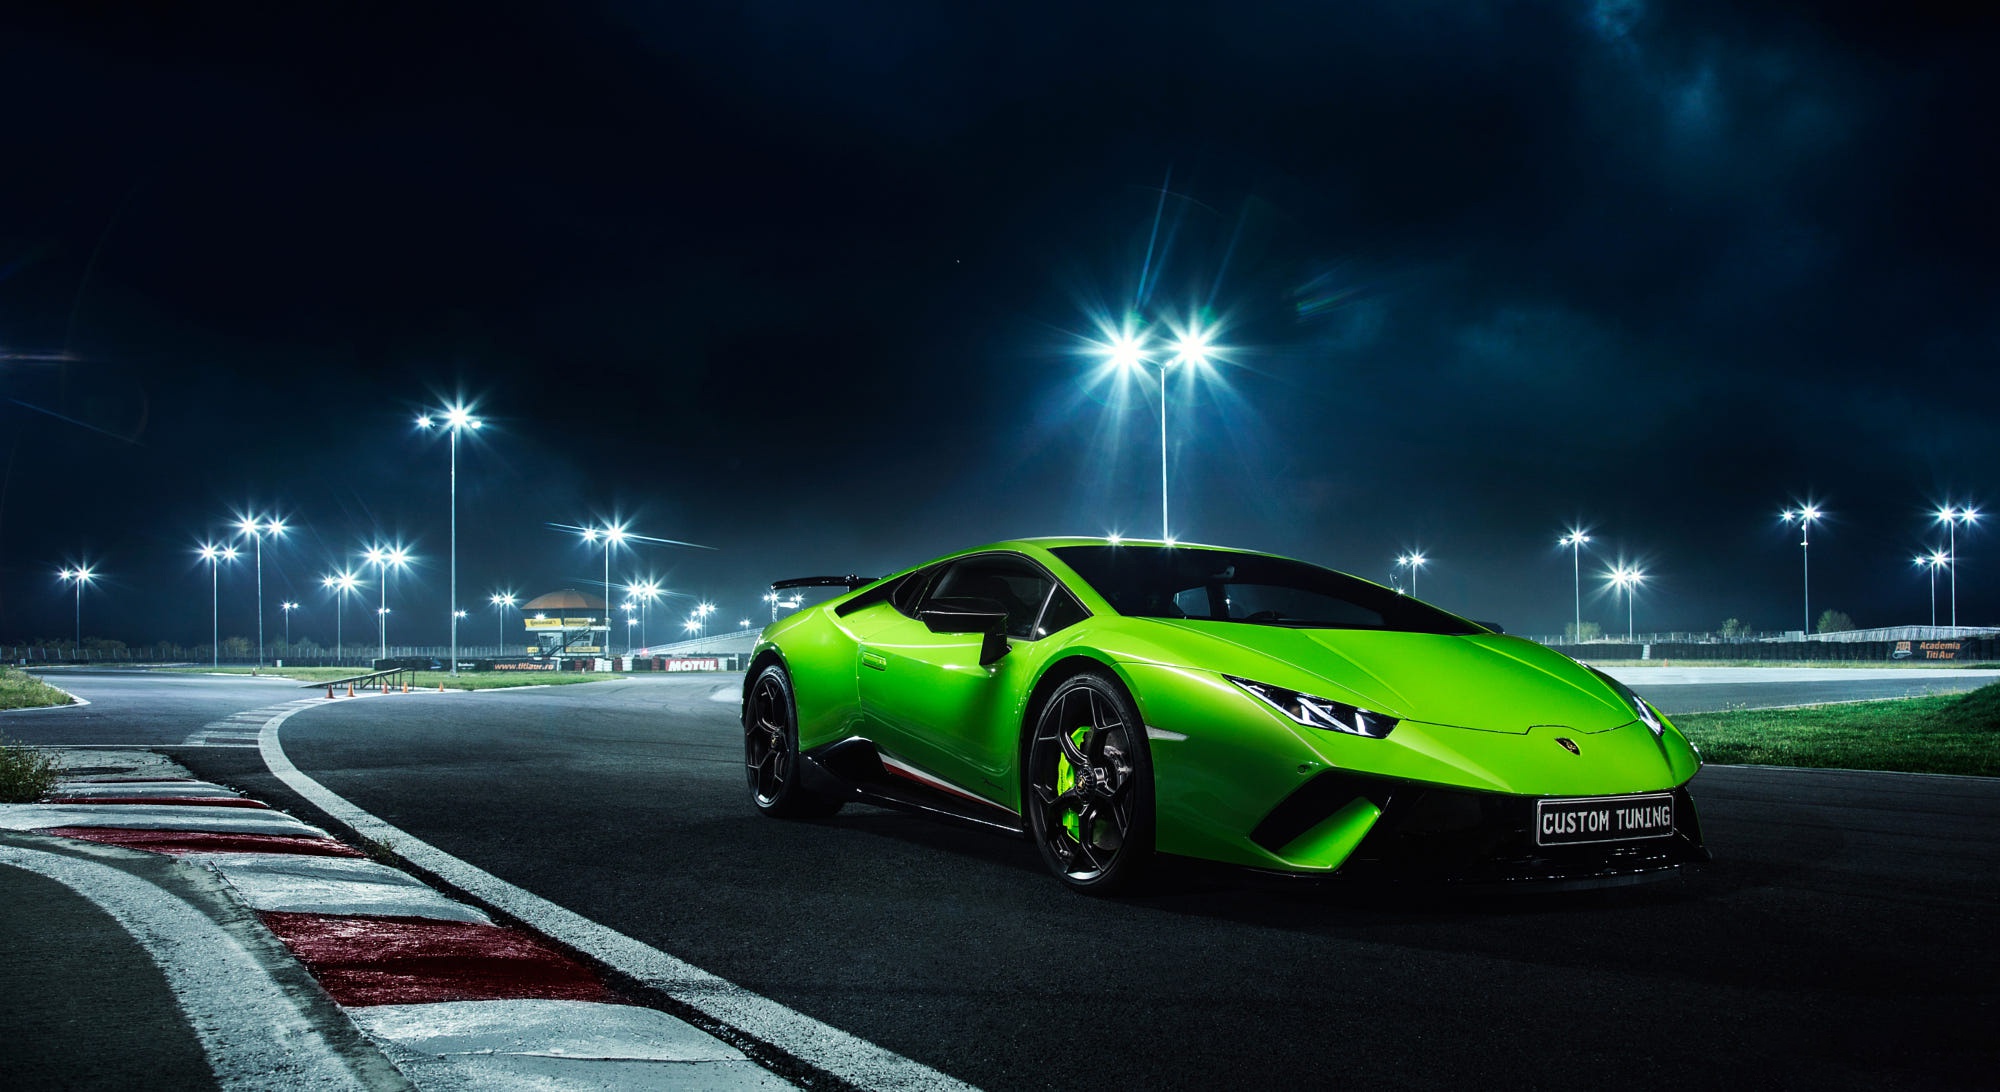 Télécharger des fonds d'écran Lamborghini Huracan Performante HD